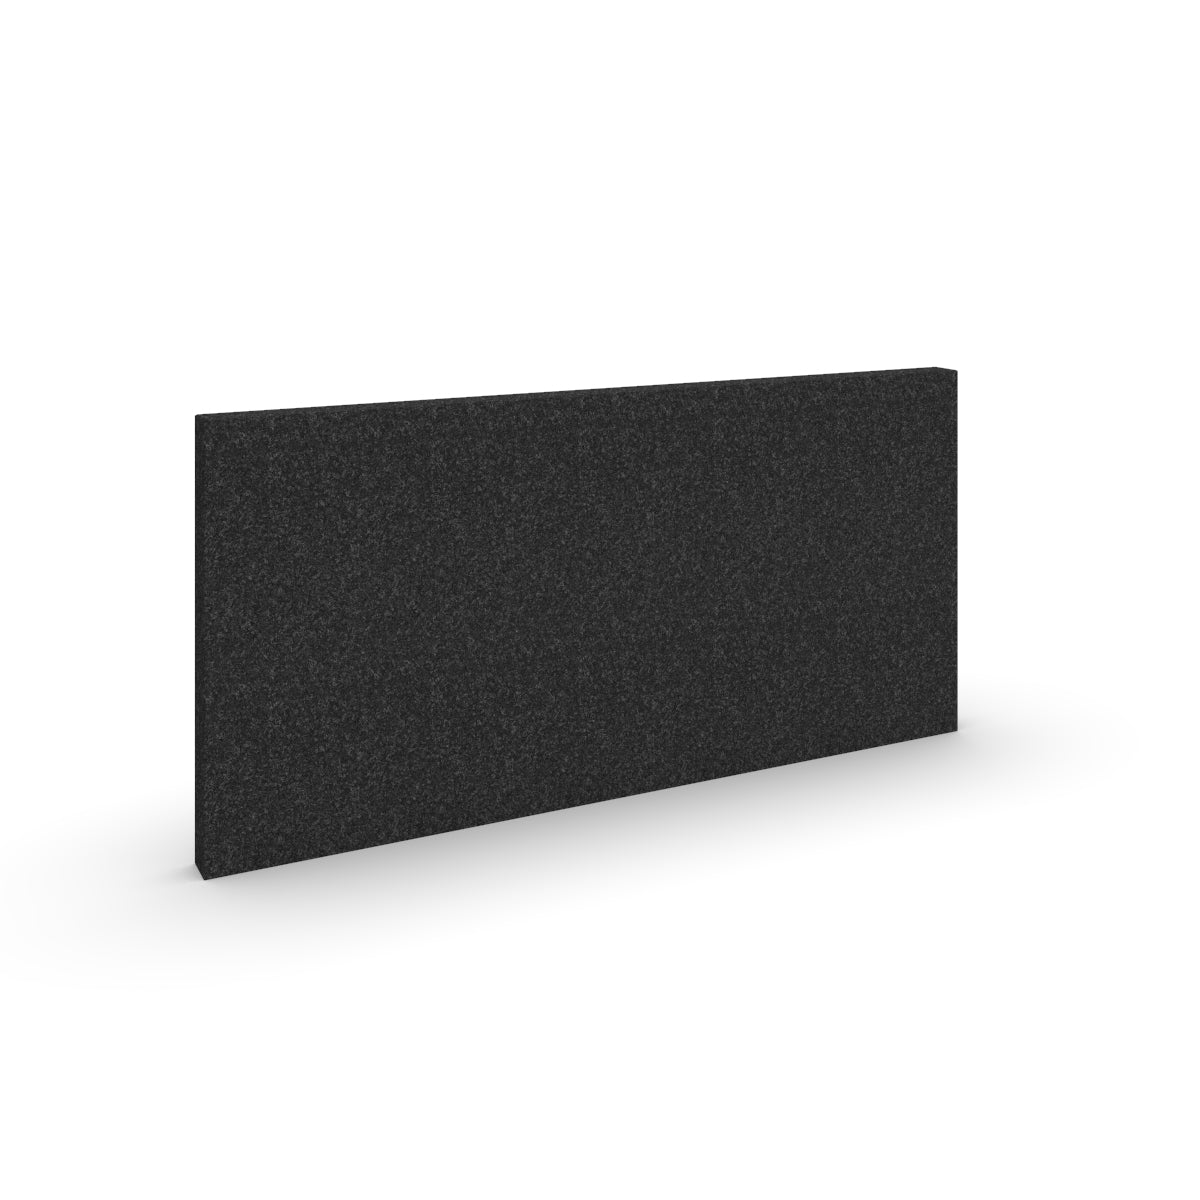 Basic wall sound absorbers in black melange acoustic wool felt. Size 58cmx116cm. Akustikkplater og lyddemping vegg